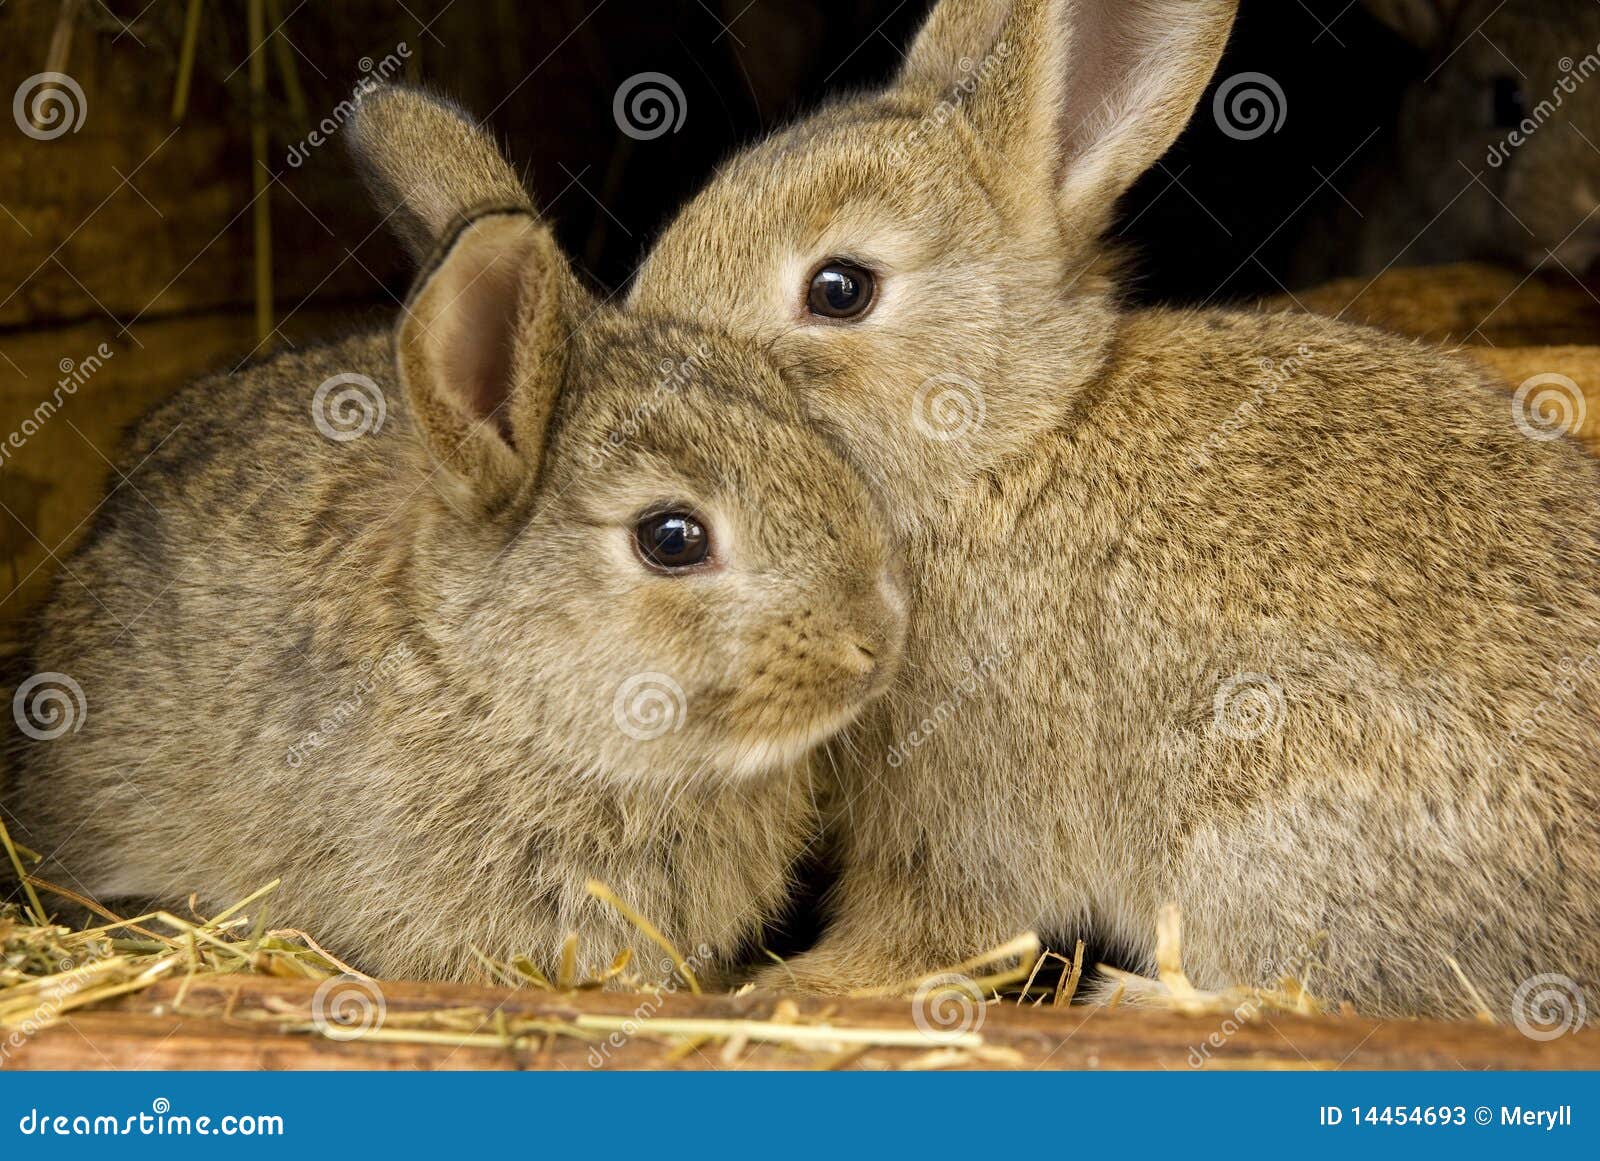 rabbits rabbit breeding